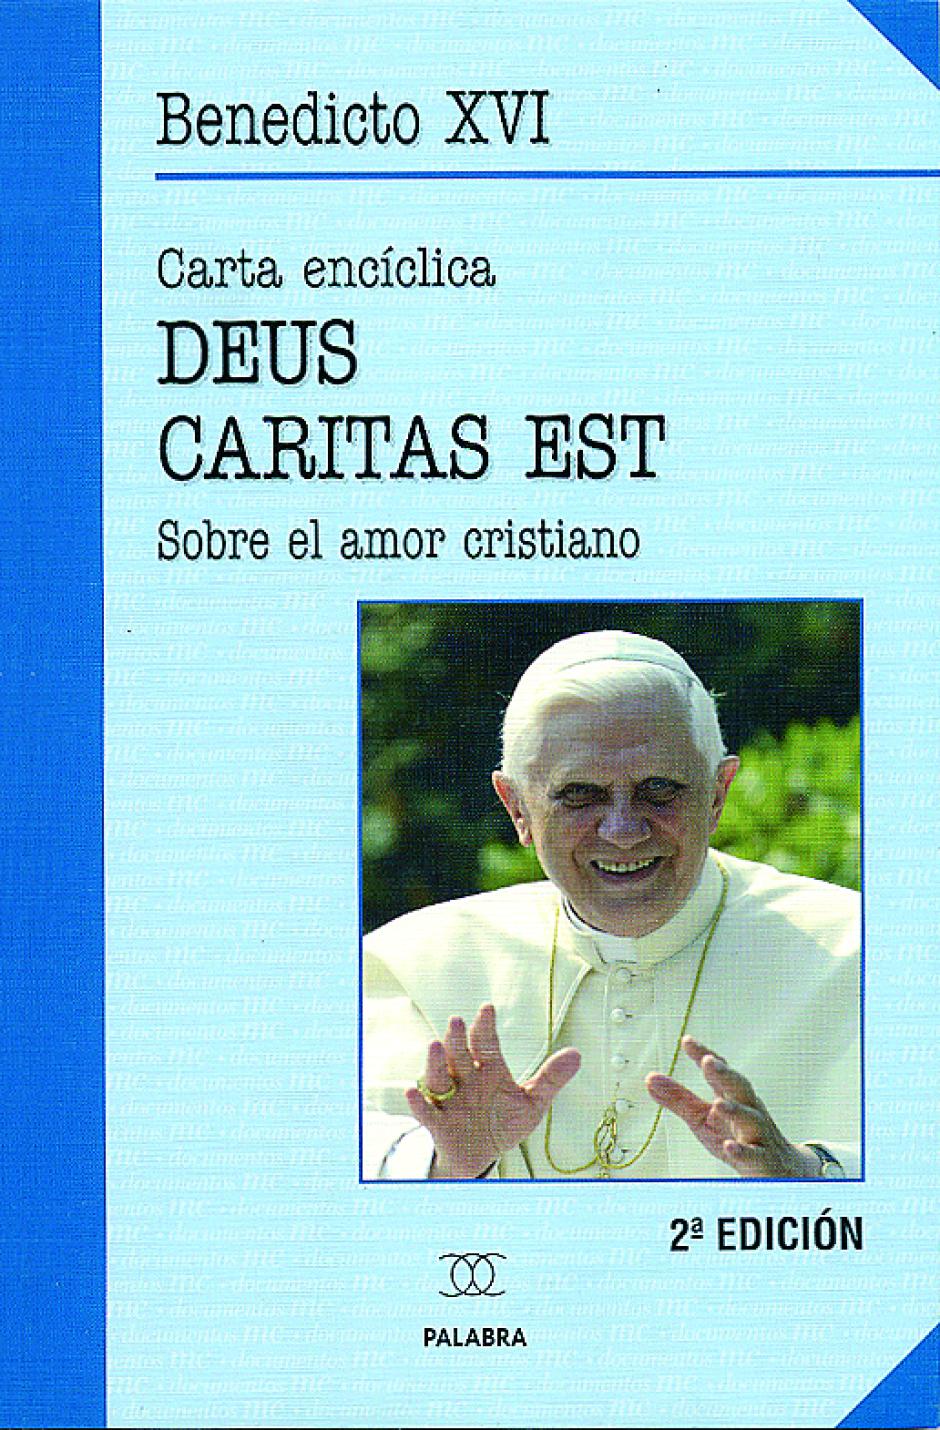 Encíclica Deus Caritas est, de Benedicto XVI